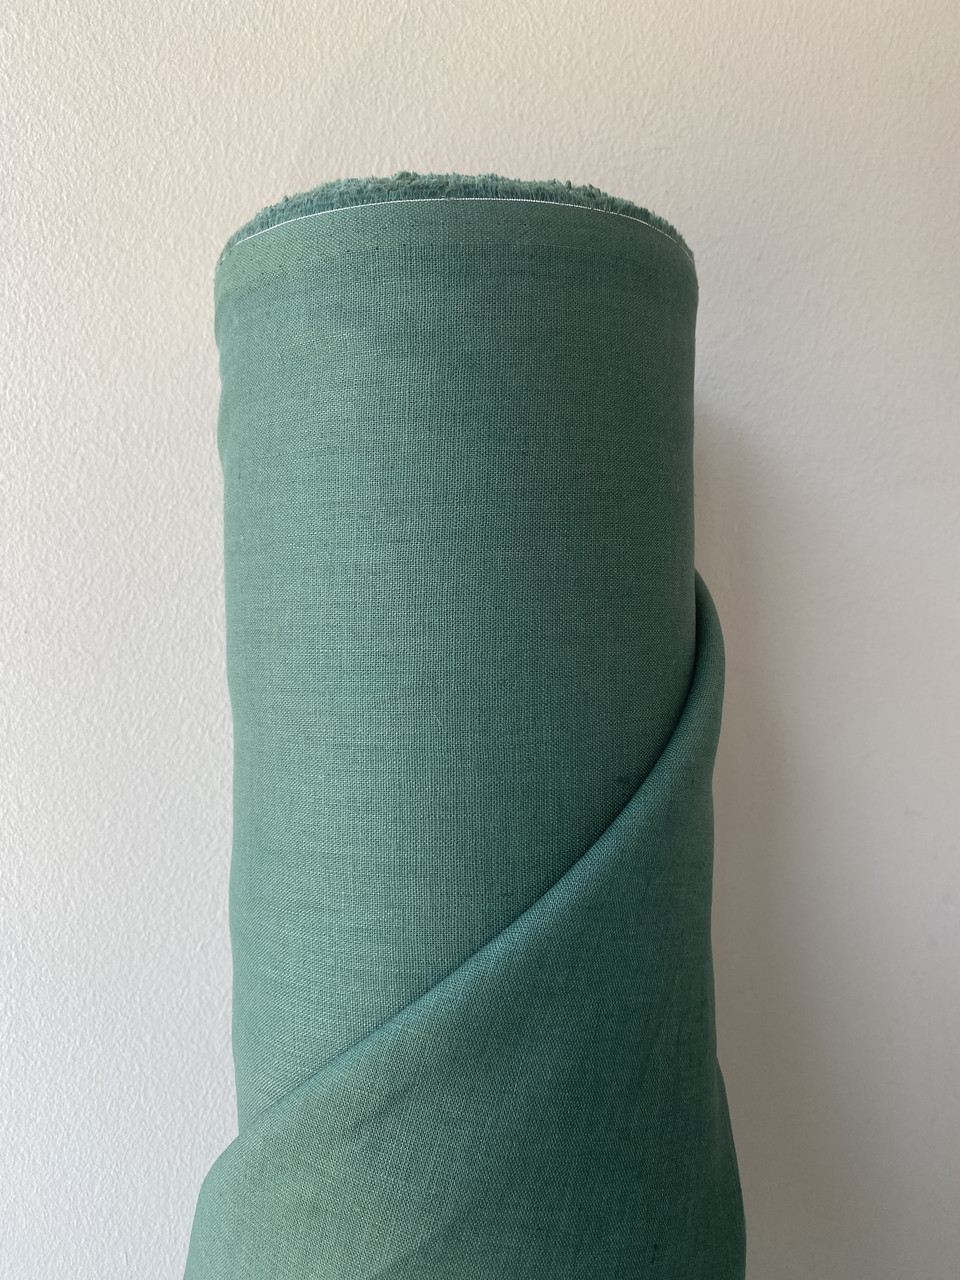 Зелена 100% лляна сорочково-платтєва тканина, колір 584/534